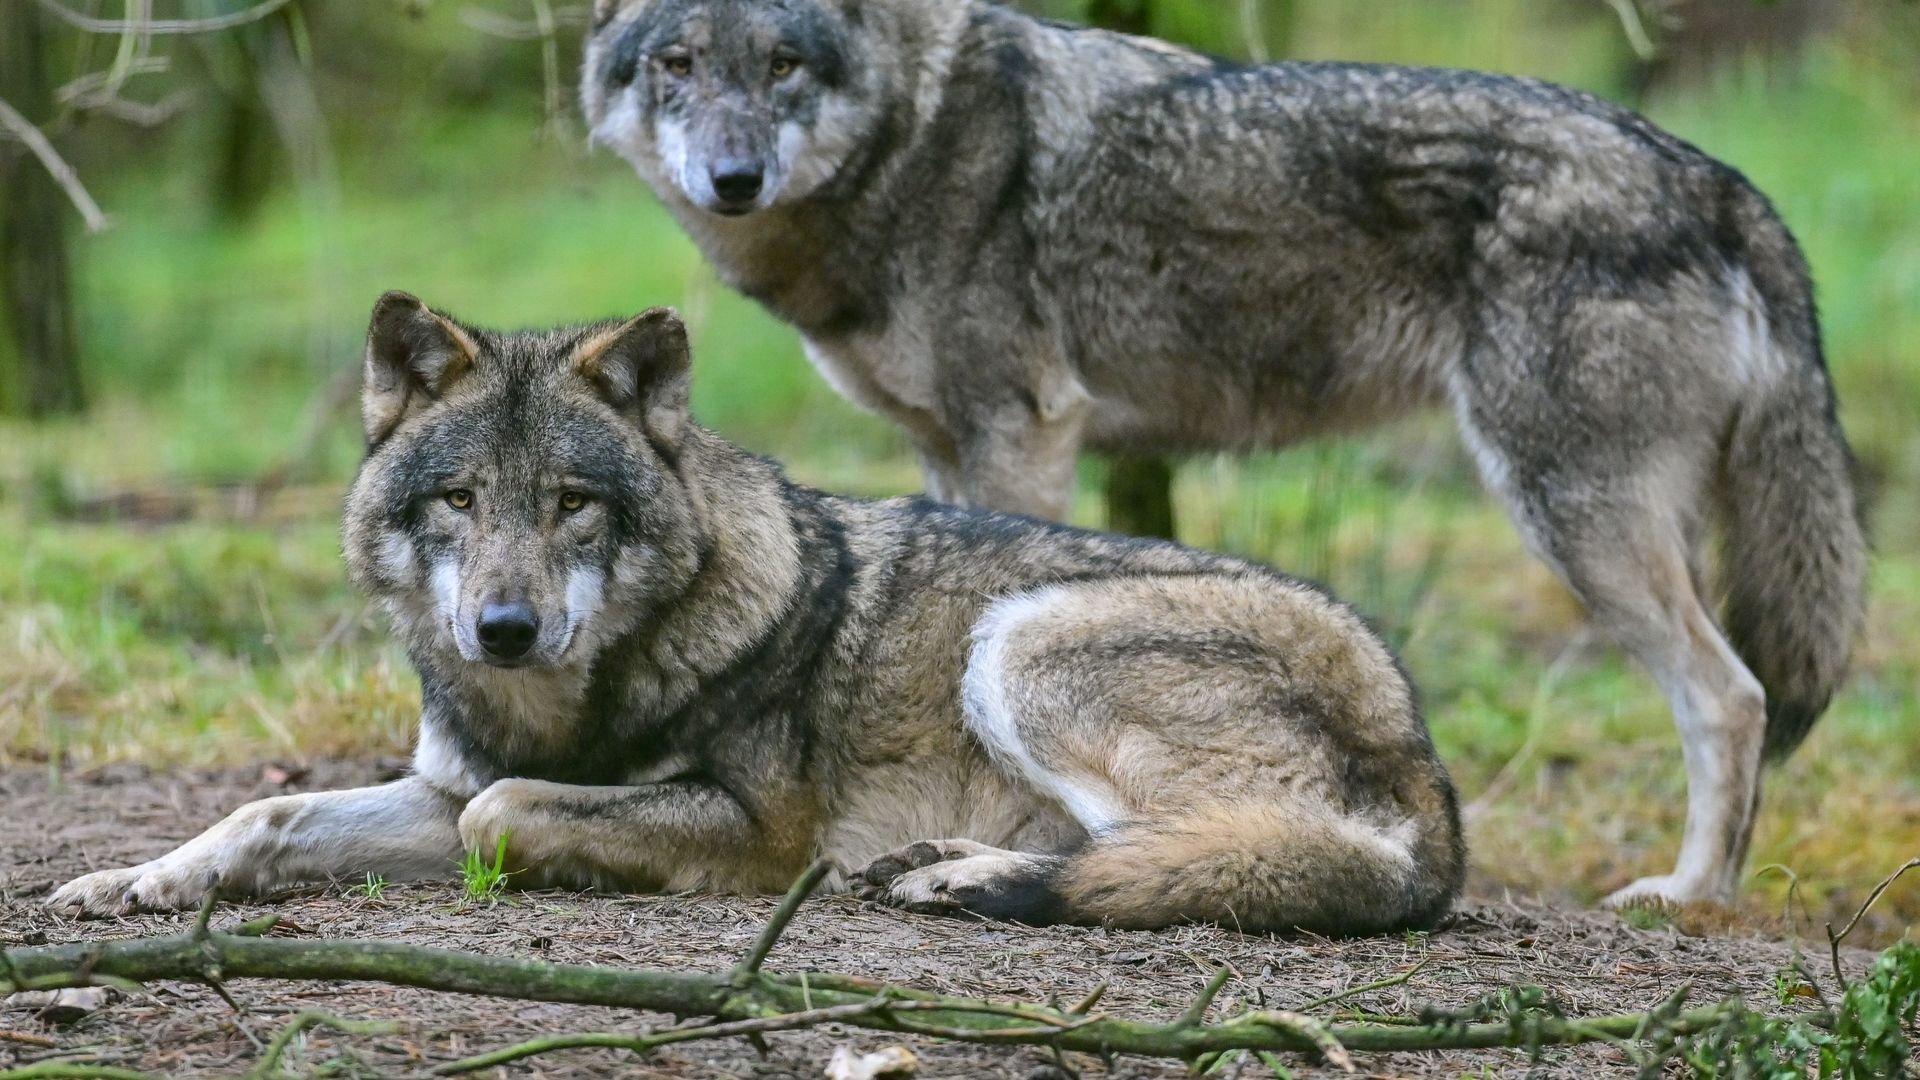 Wölfe breiten sich weiter aus - mehr Nutztierattacken